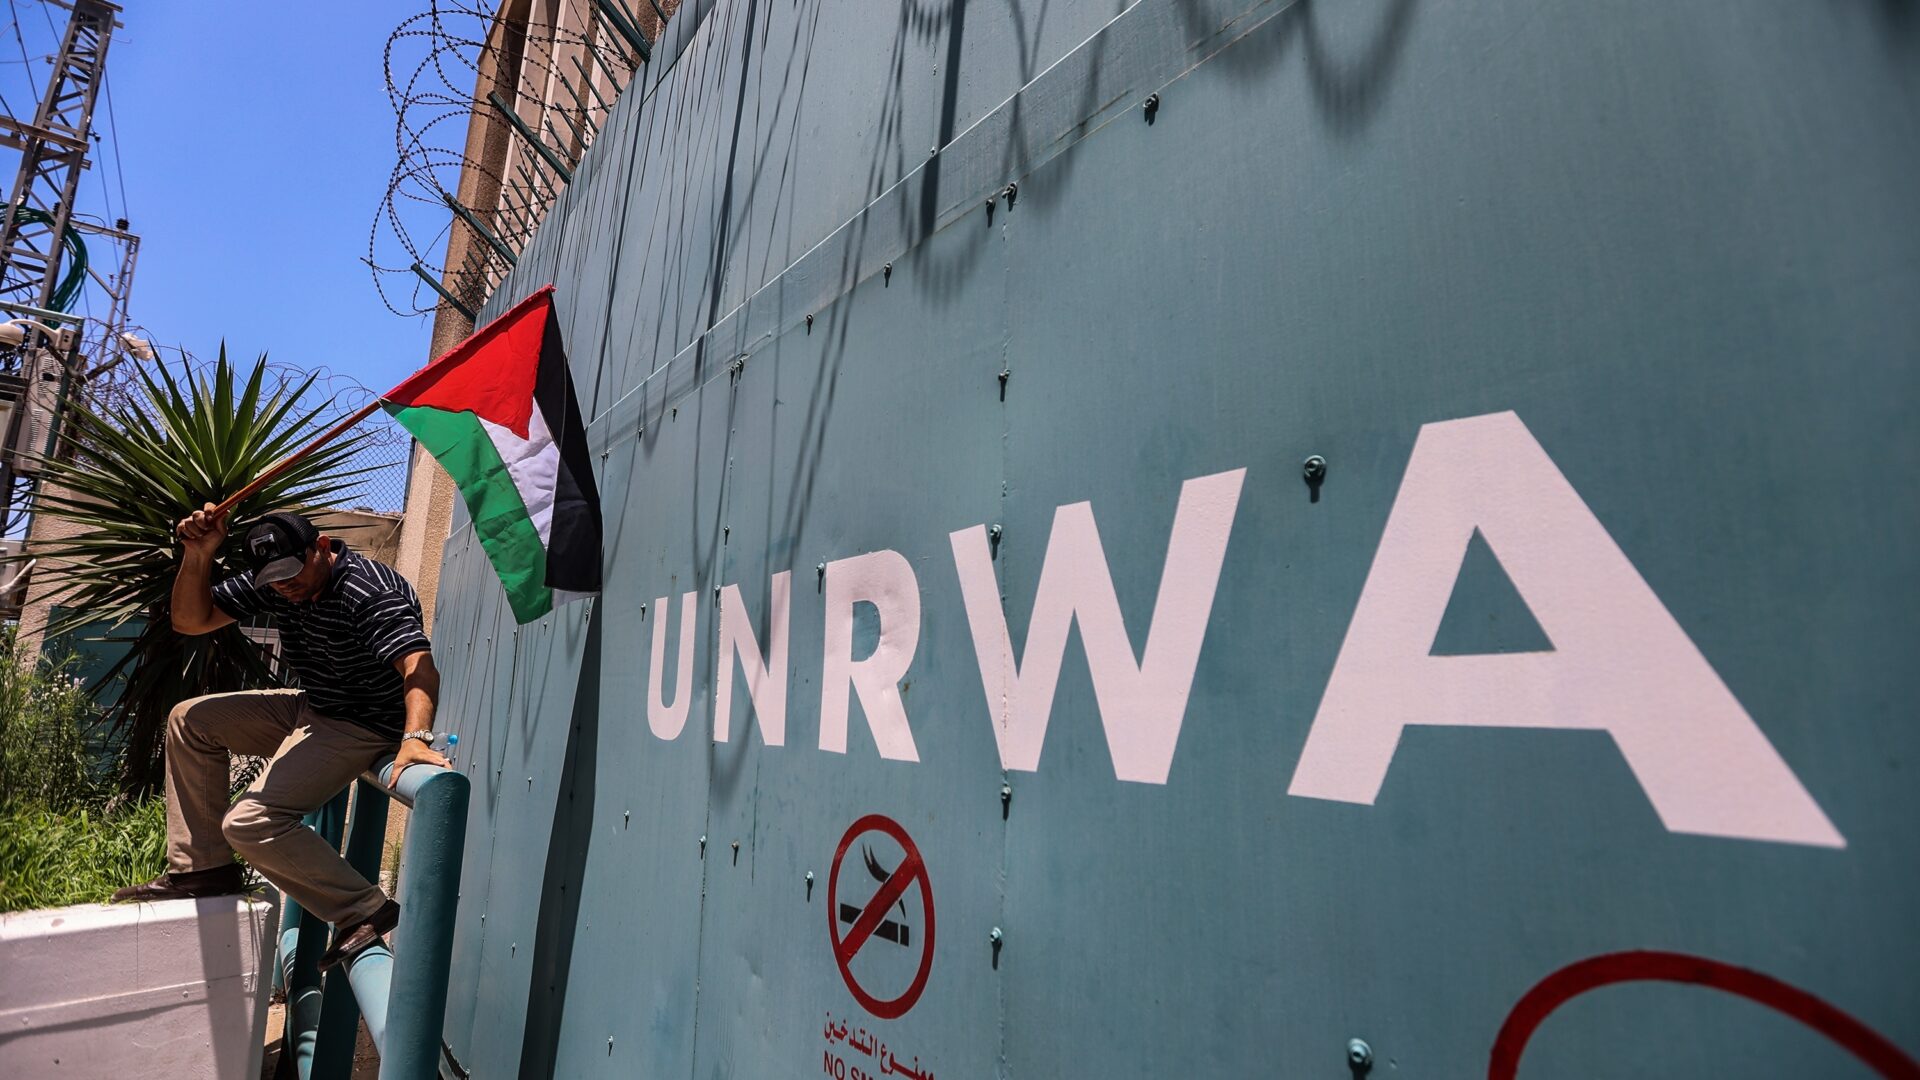 Η Σαουδική Αραβία ανακοινώνει δωρεά 40 εκατομμυρίων δολαρίων για την UNRWA